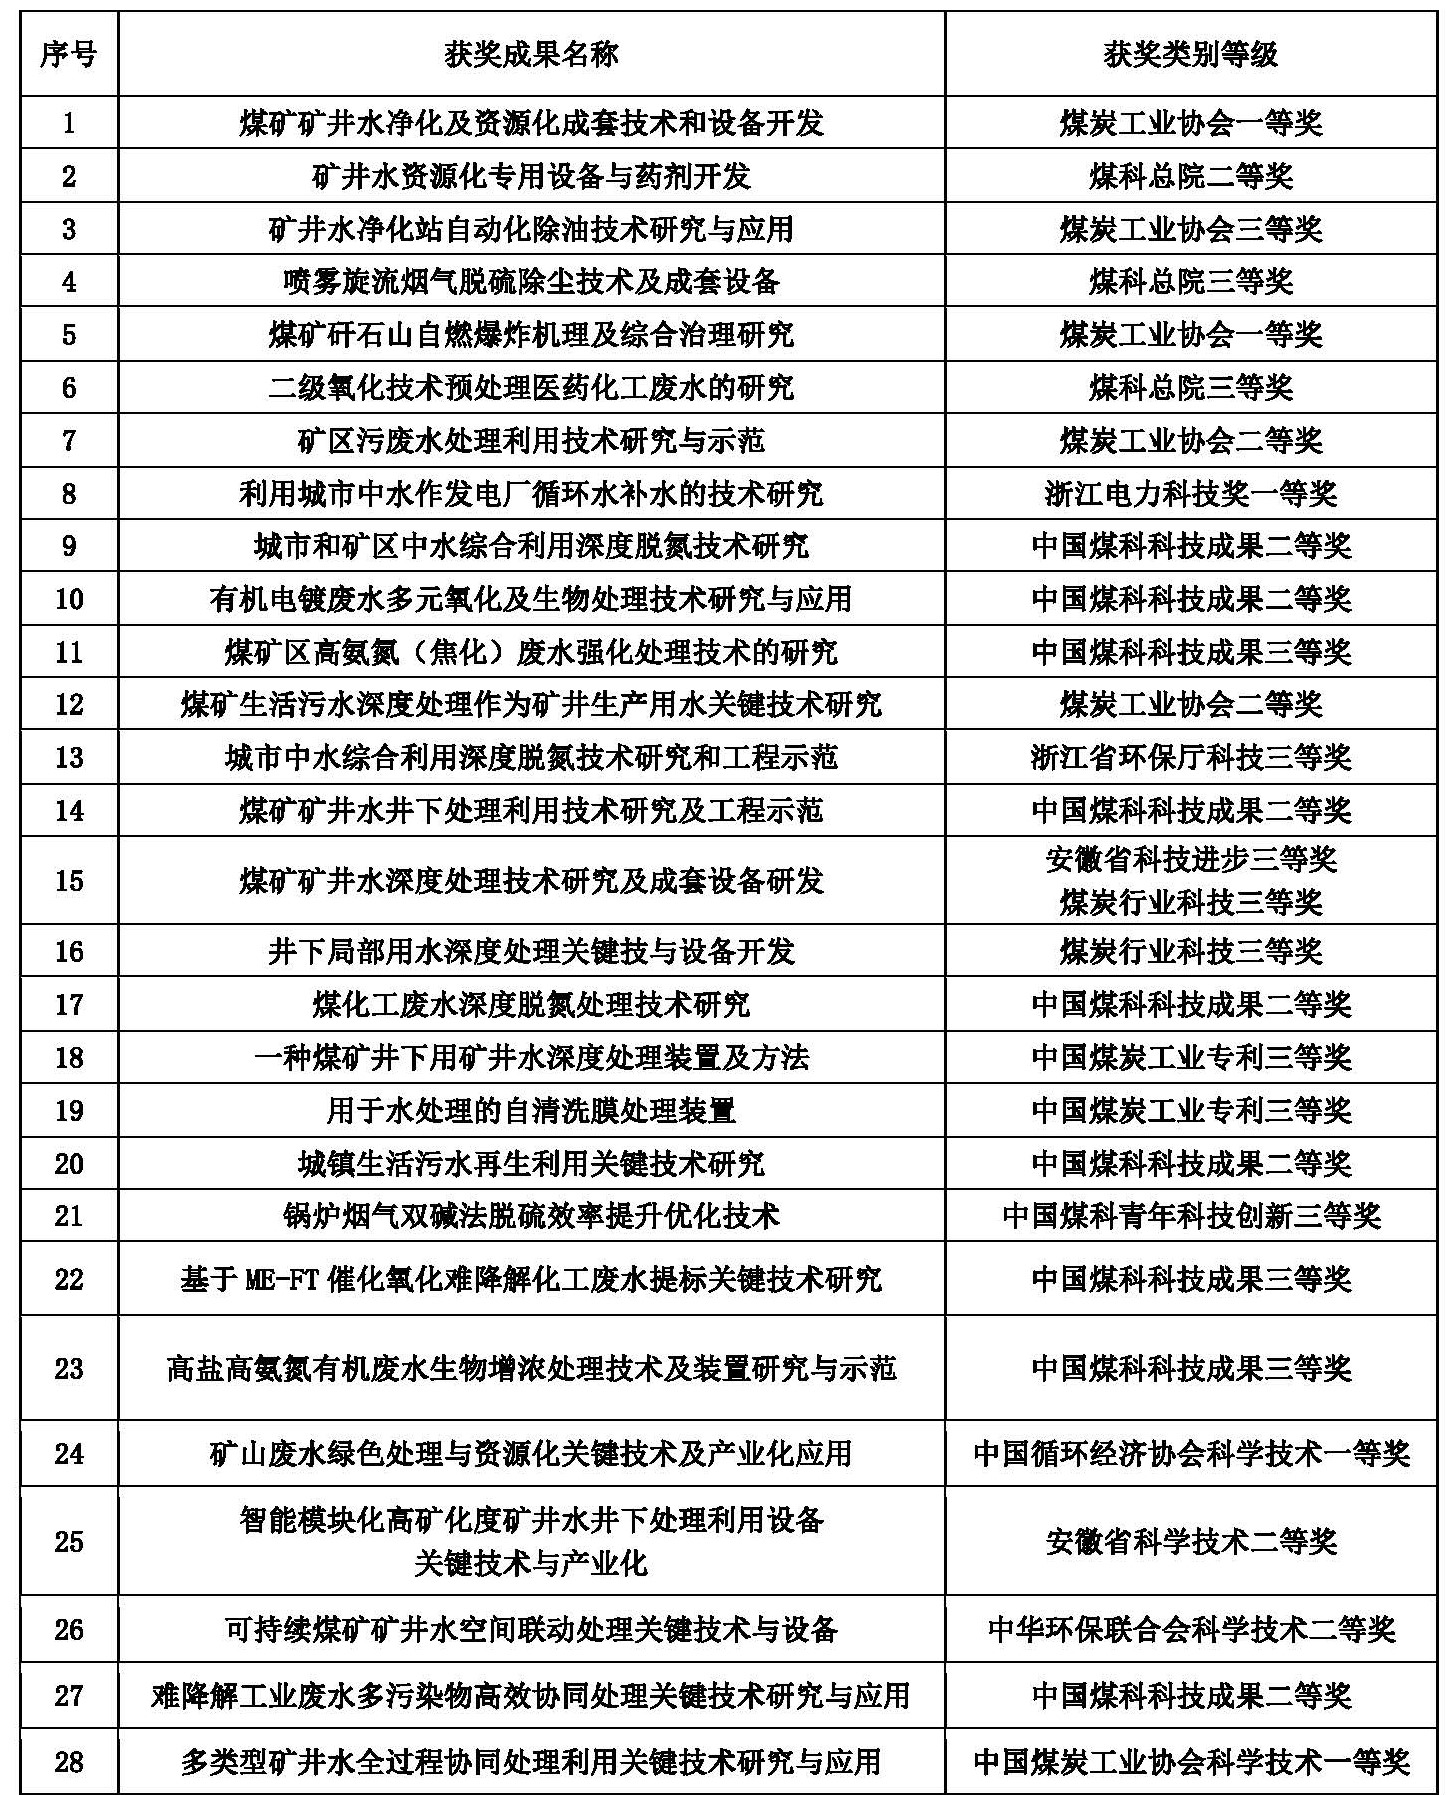 中國煤科杭州研究院科研成果總表（2001-2022）.jpg